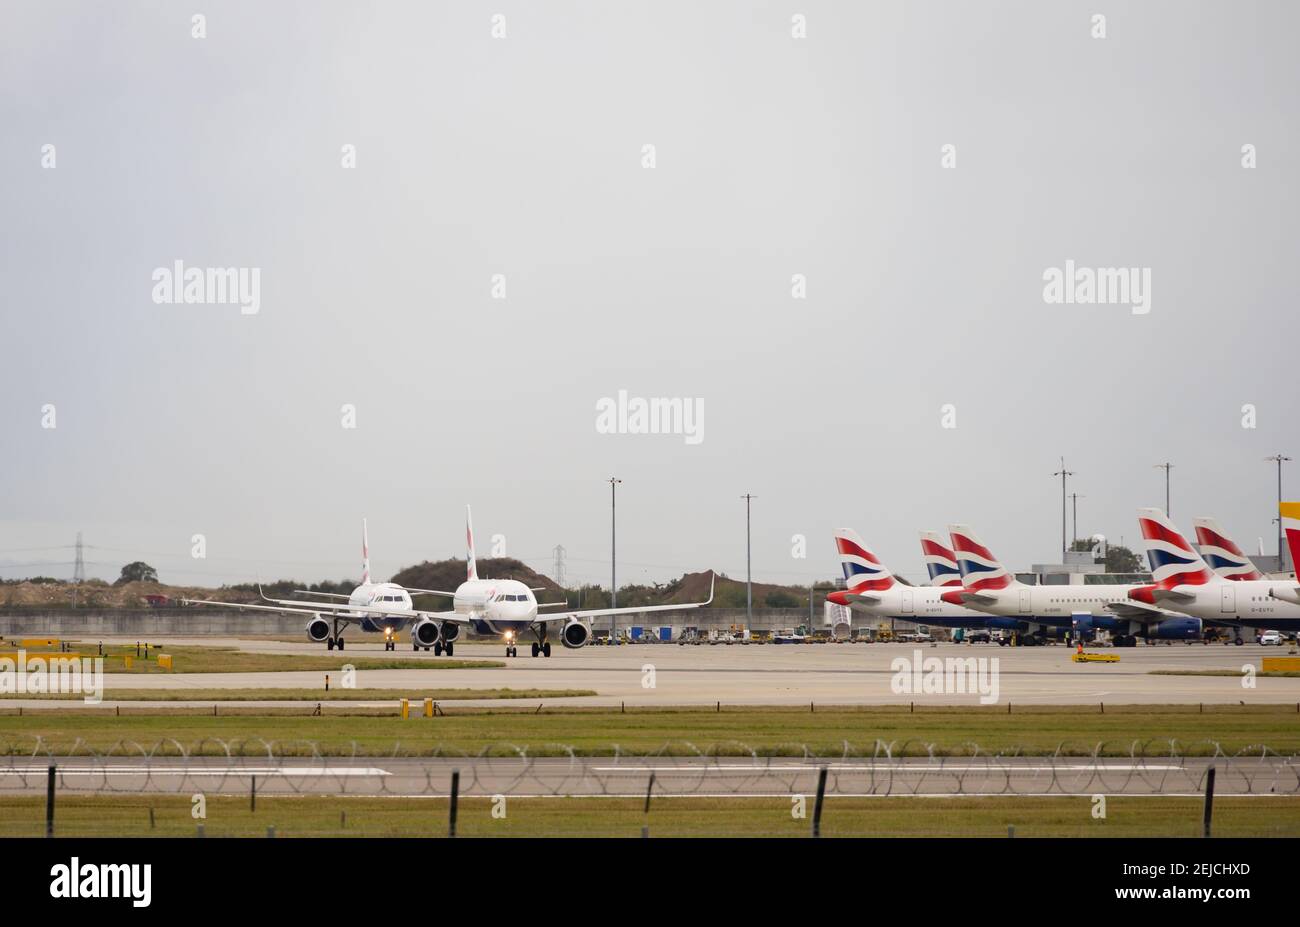 Zwei British Airways Airbus A320-232 Taxi vorbei an anderen geparkten. G-EUYY UND G-EUYL. G-EUYY hat Sharklet-Winglets eingebaut. Flughafen London Heathrow, London, Stockfoto